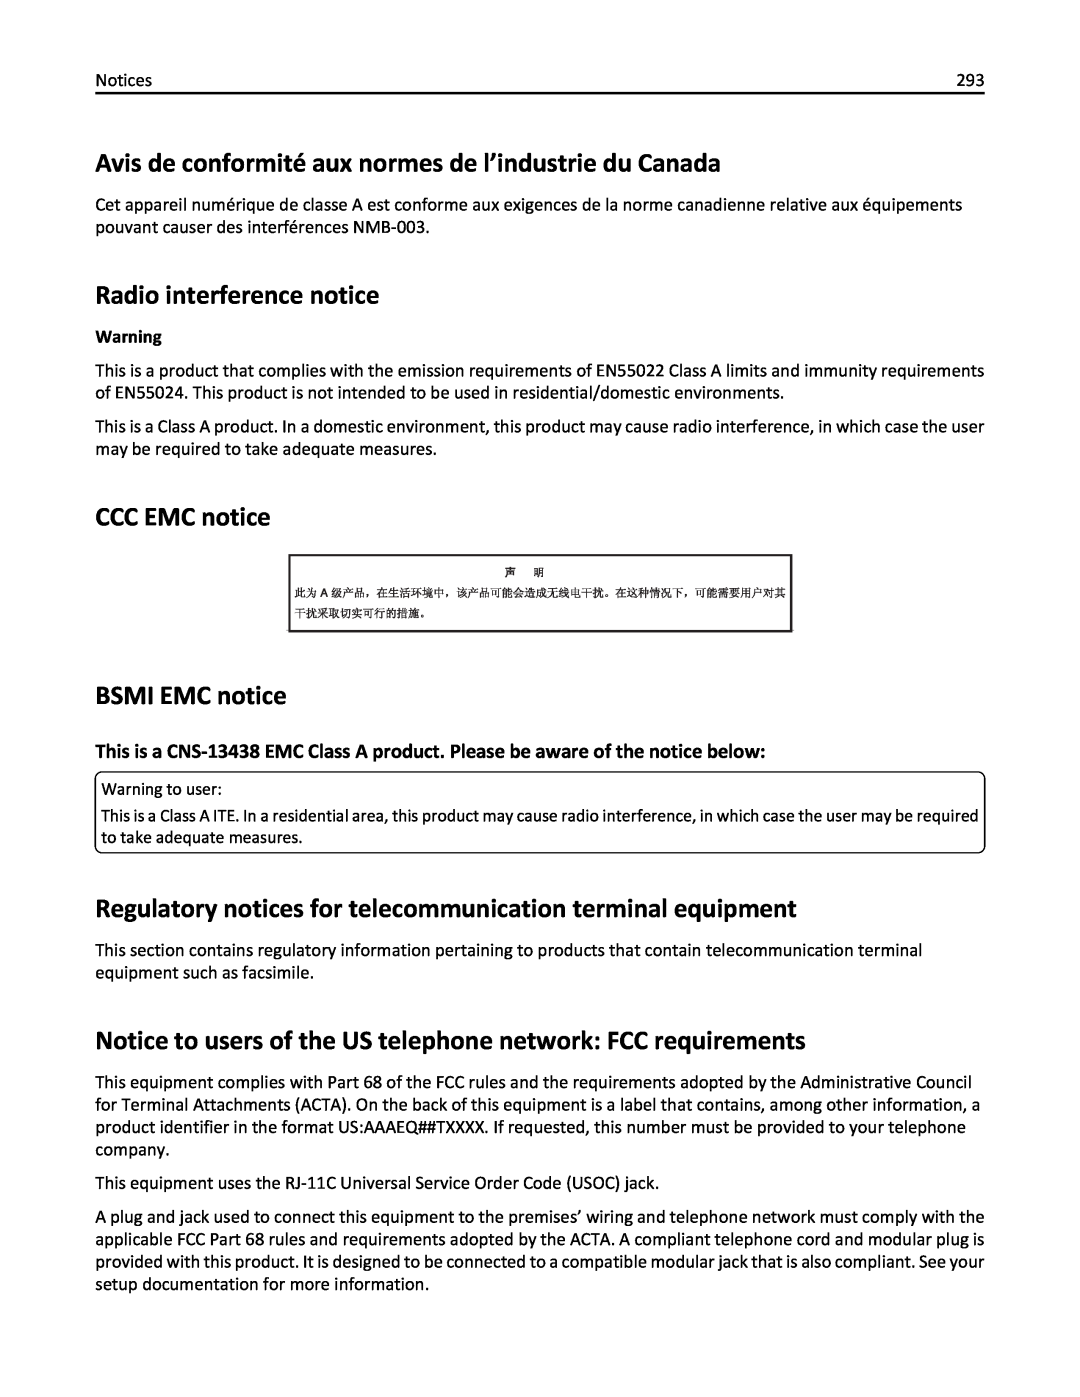 Lexmark 19Z4028, 432, 19Z0101, 632, 832 Avis de conformité aux normes de l’industrie du Canada, Radio interference notice 